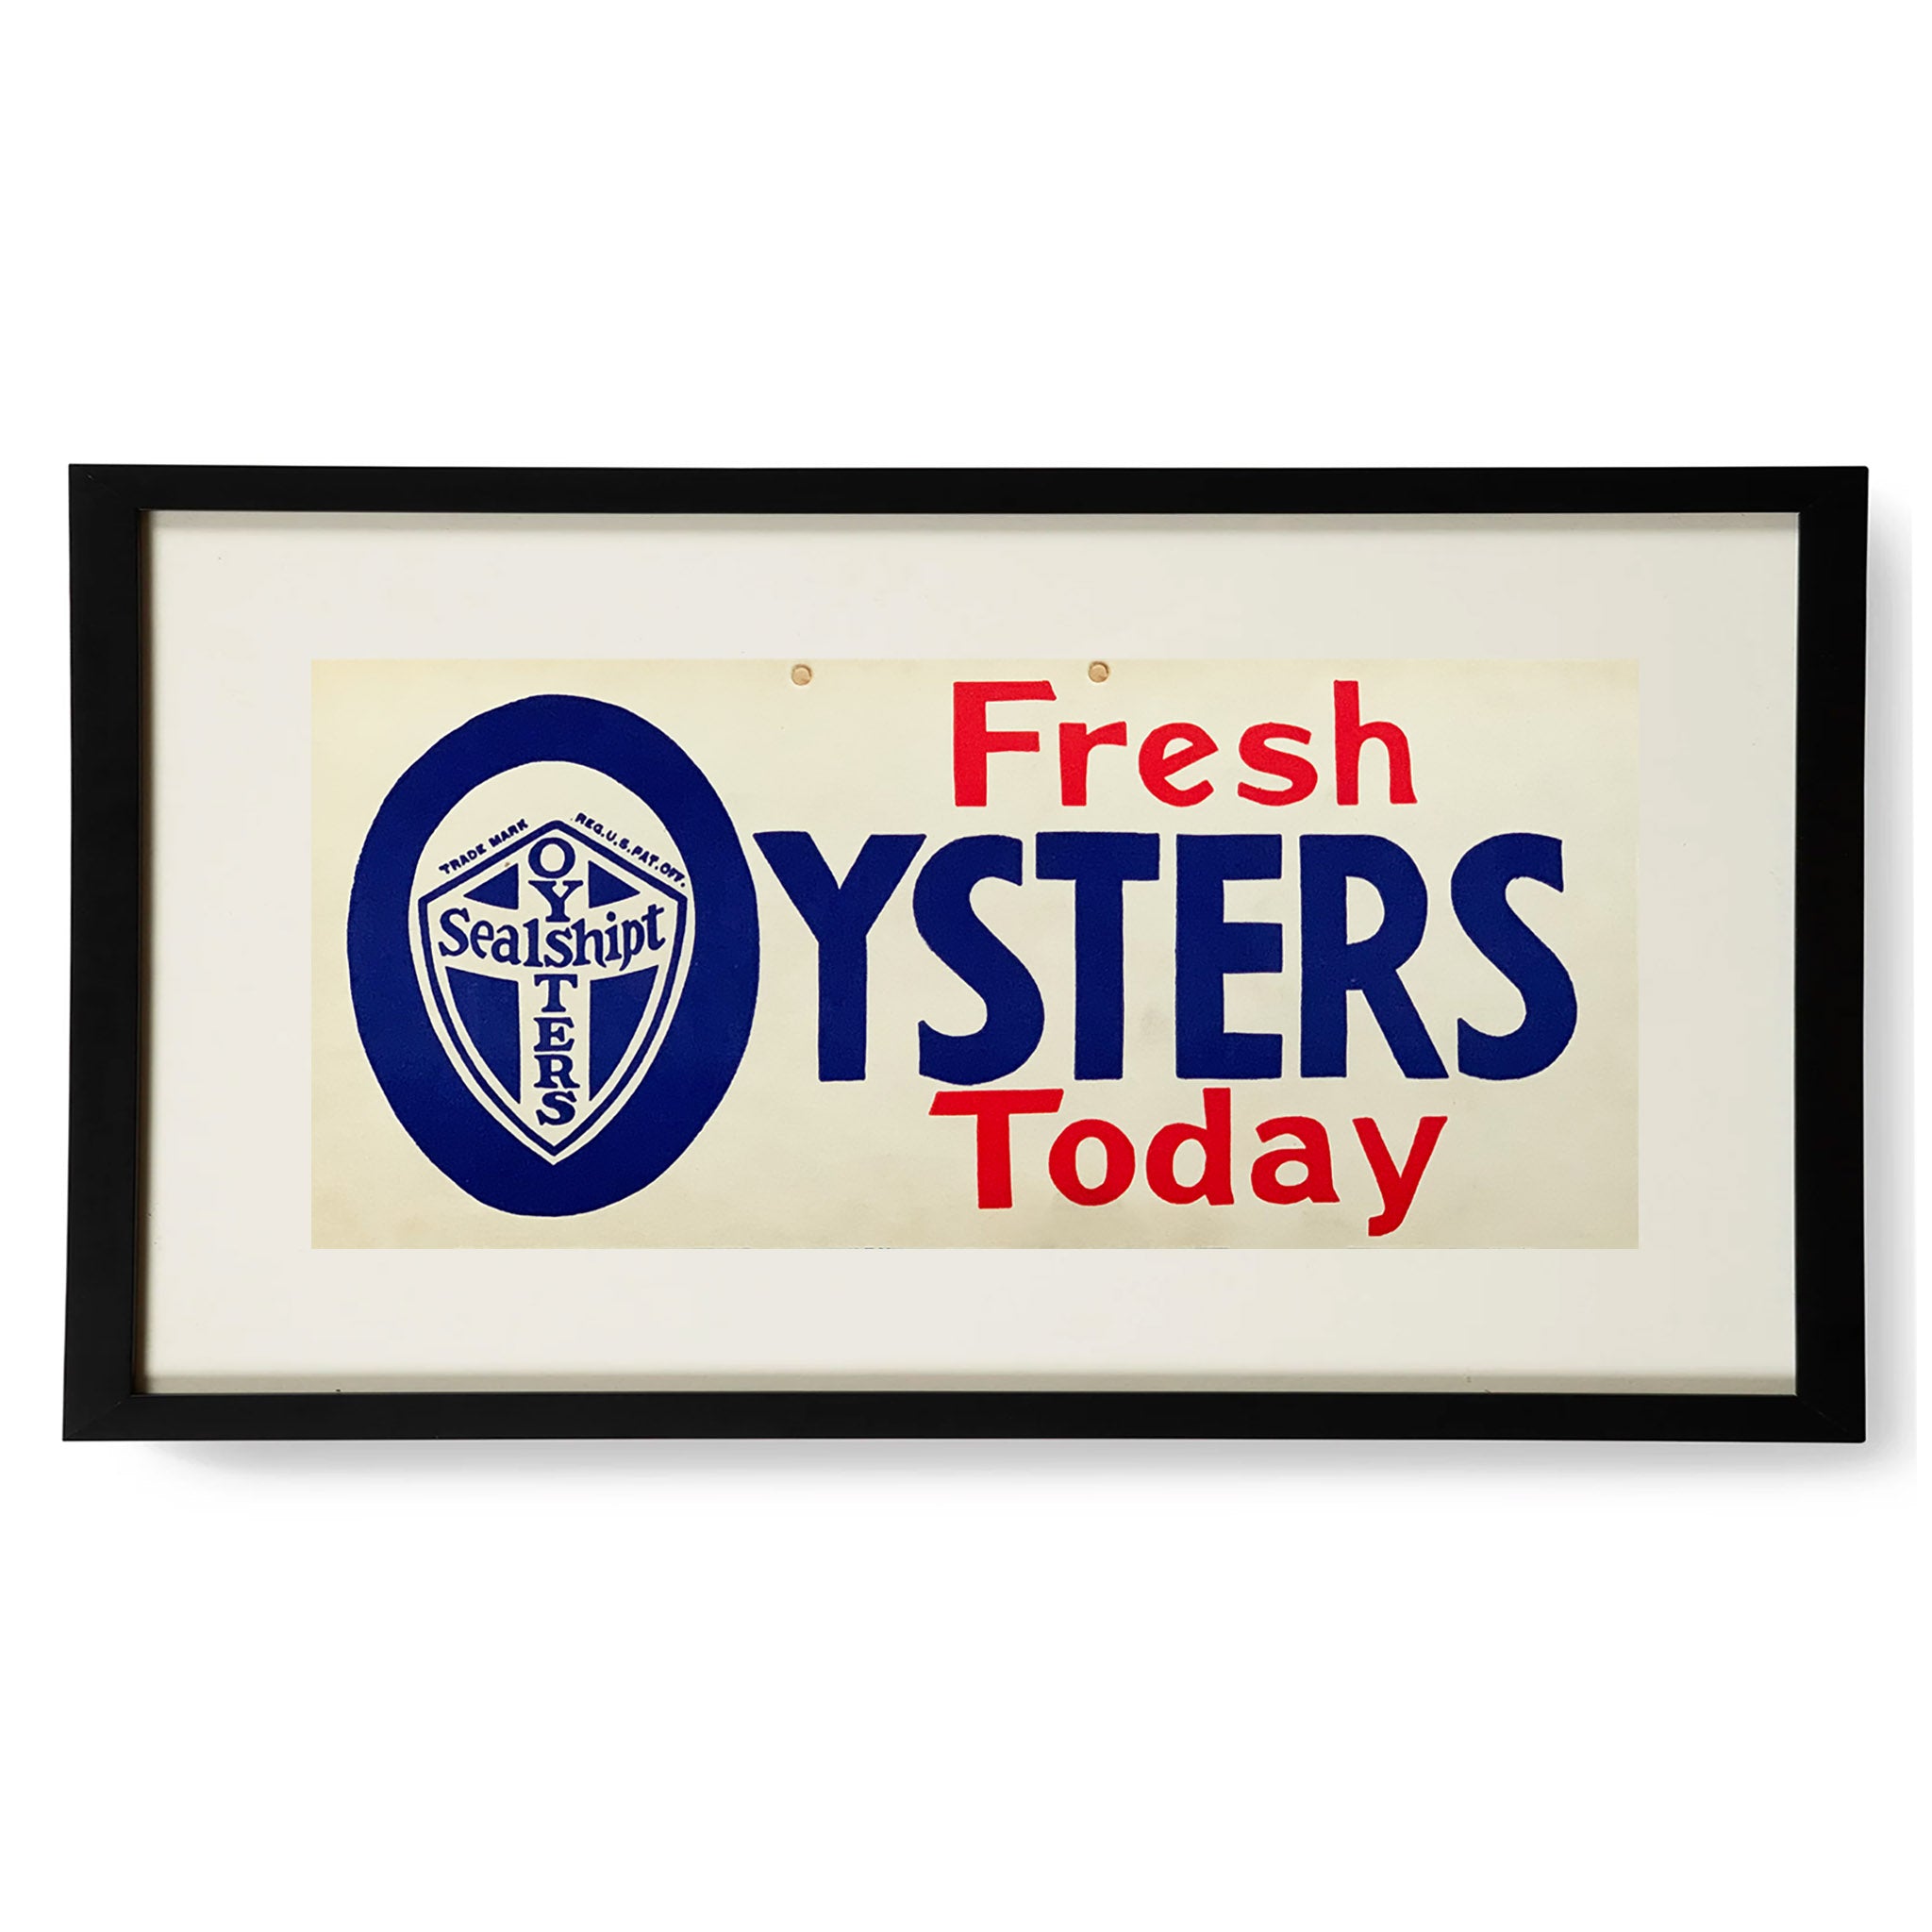 Framed Sealshipt Oyster Sign